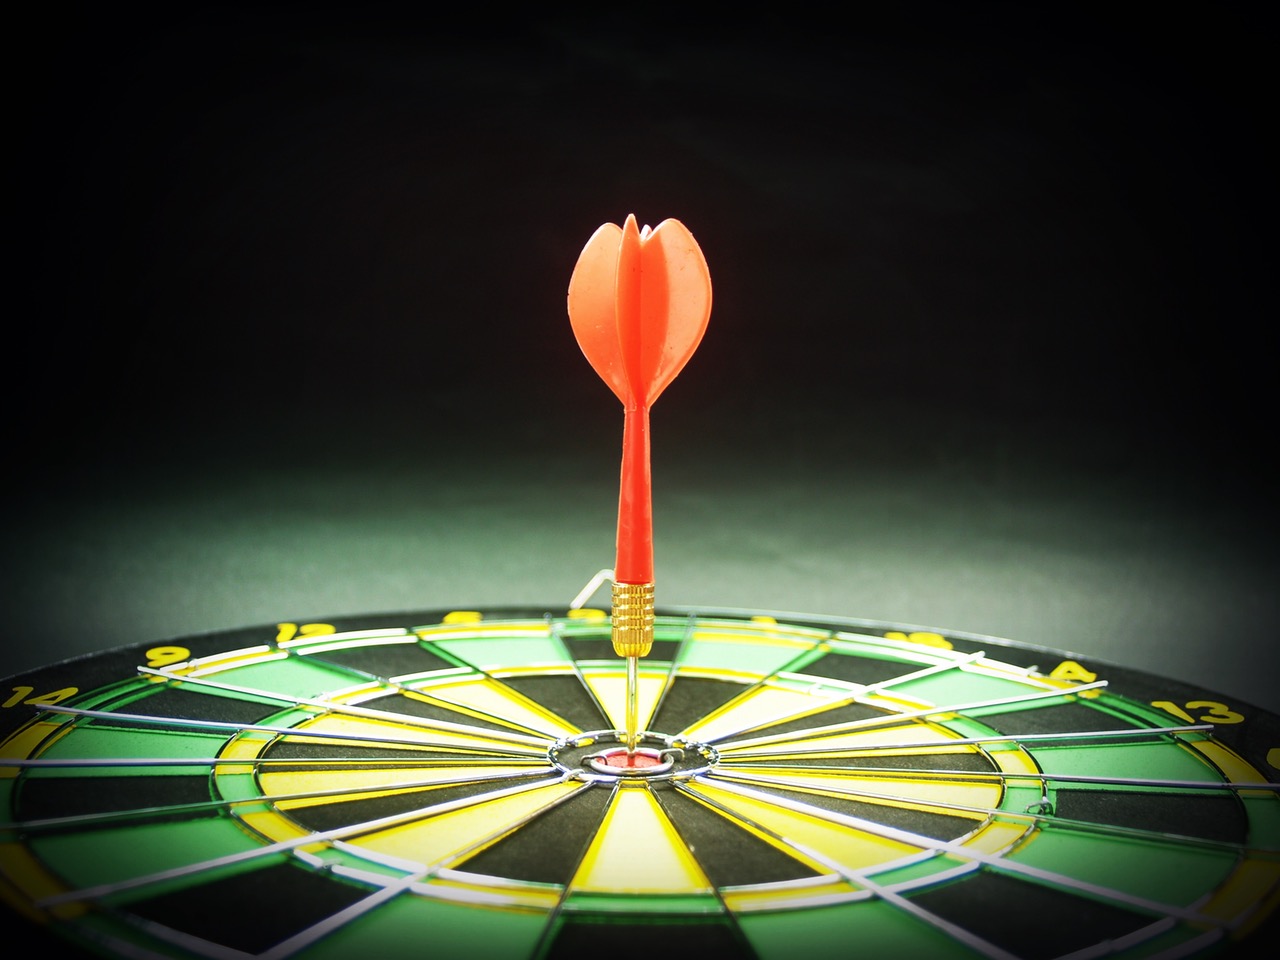 Focus target to aim for bullseye